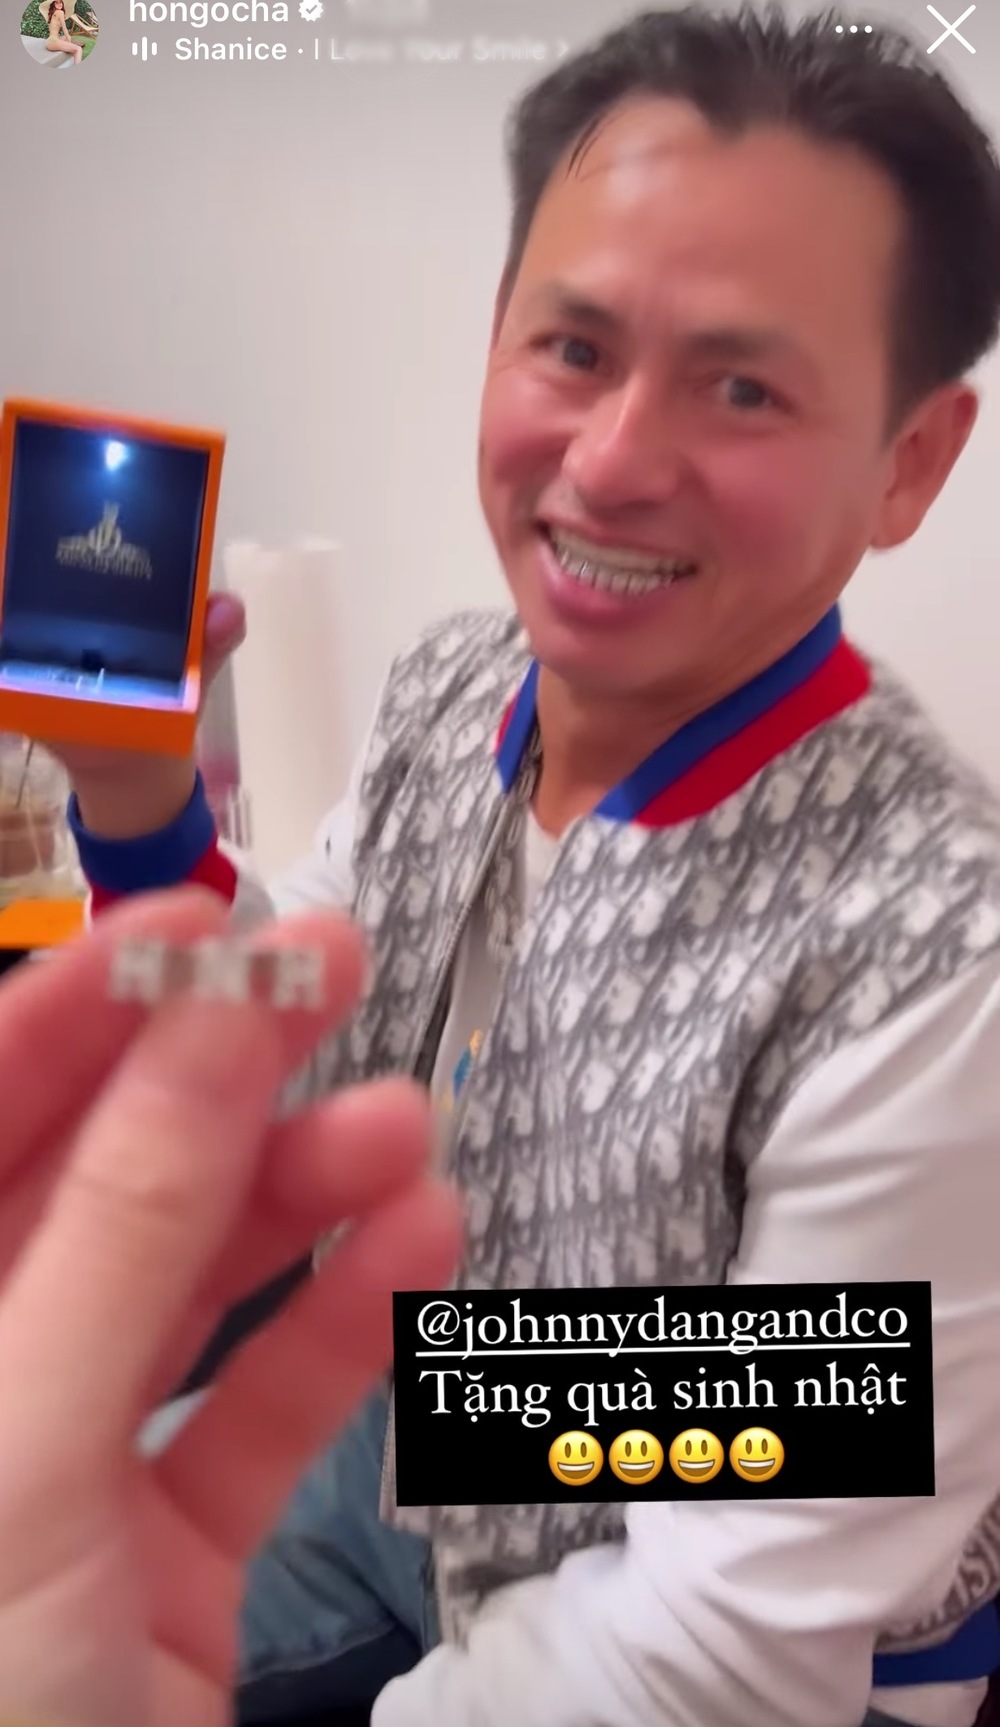 Hết làm răng bọc kim cương, Johnny Đặng tặng quà sinh nhật khắc tên riêng cho Hà Hồ - ảnh 4